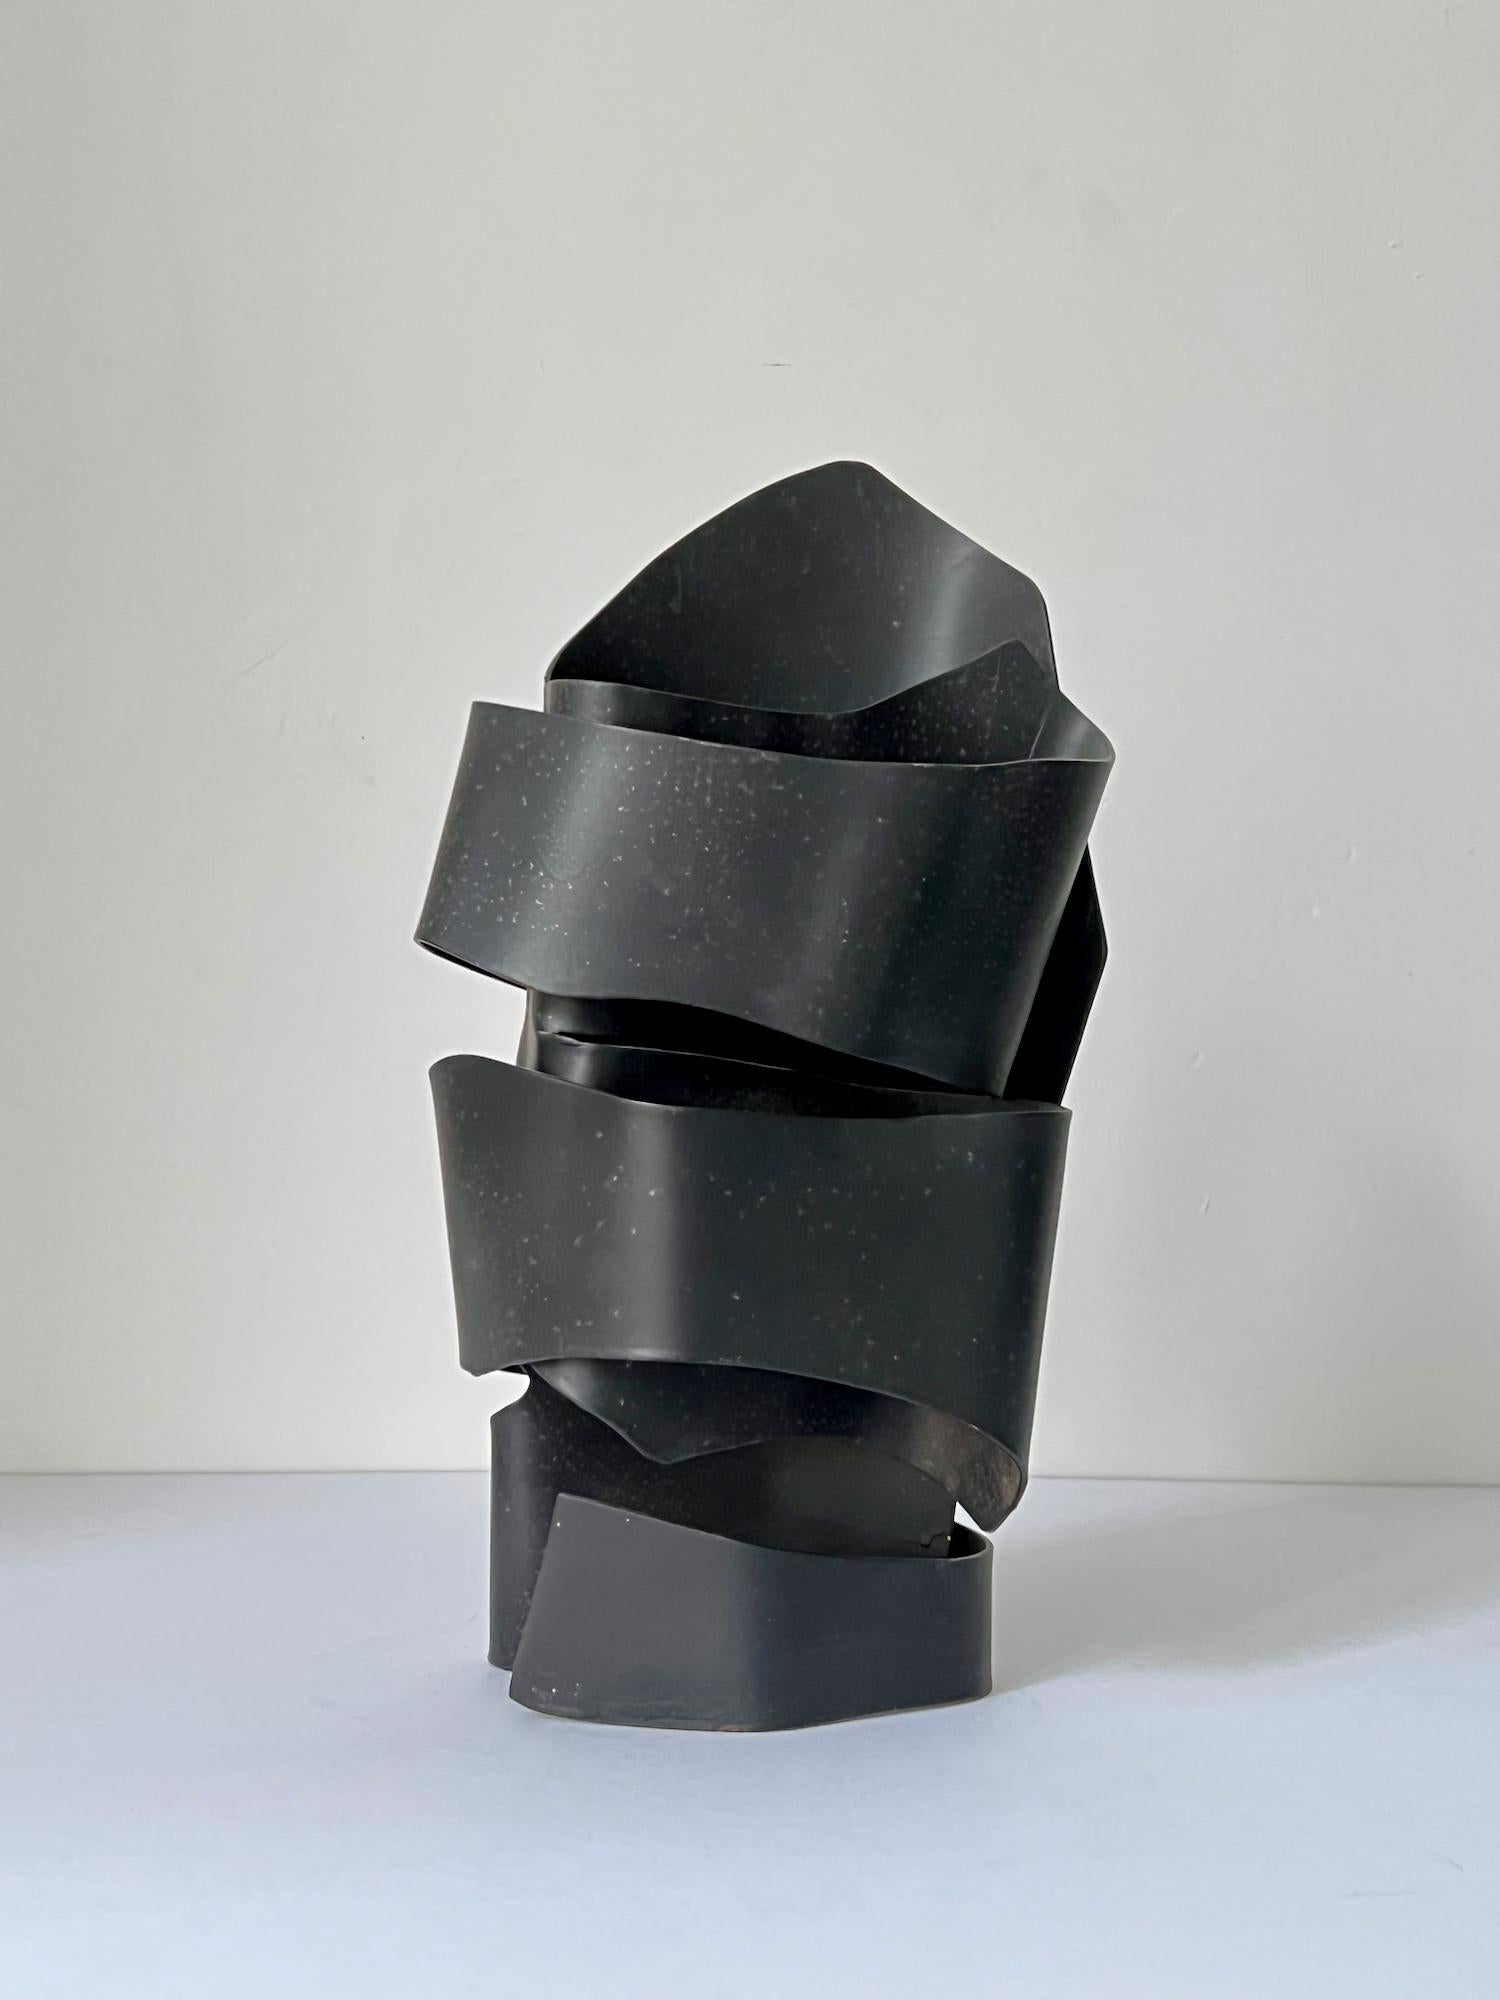 Abstrakte Stahlskulptur in Form eines Helms; aus dem Nachlass der Künstlerin June Barrington-Ward (1922-2002) und ihr zugeschrieben. England 1970er Jahre. Nicht signiert.

Guter Originalzustand mit einigen altersgemäßen Gebrauchsspuren wie kleinen